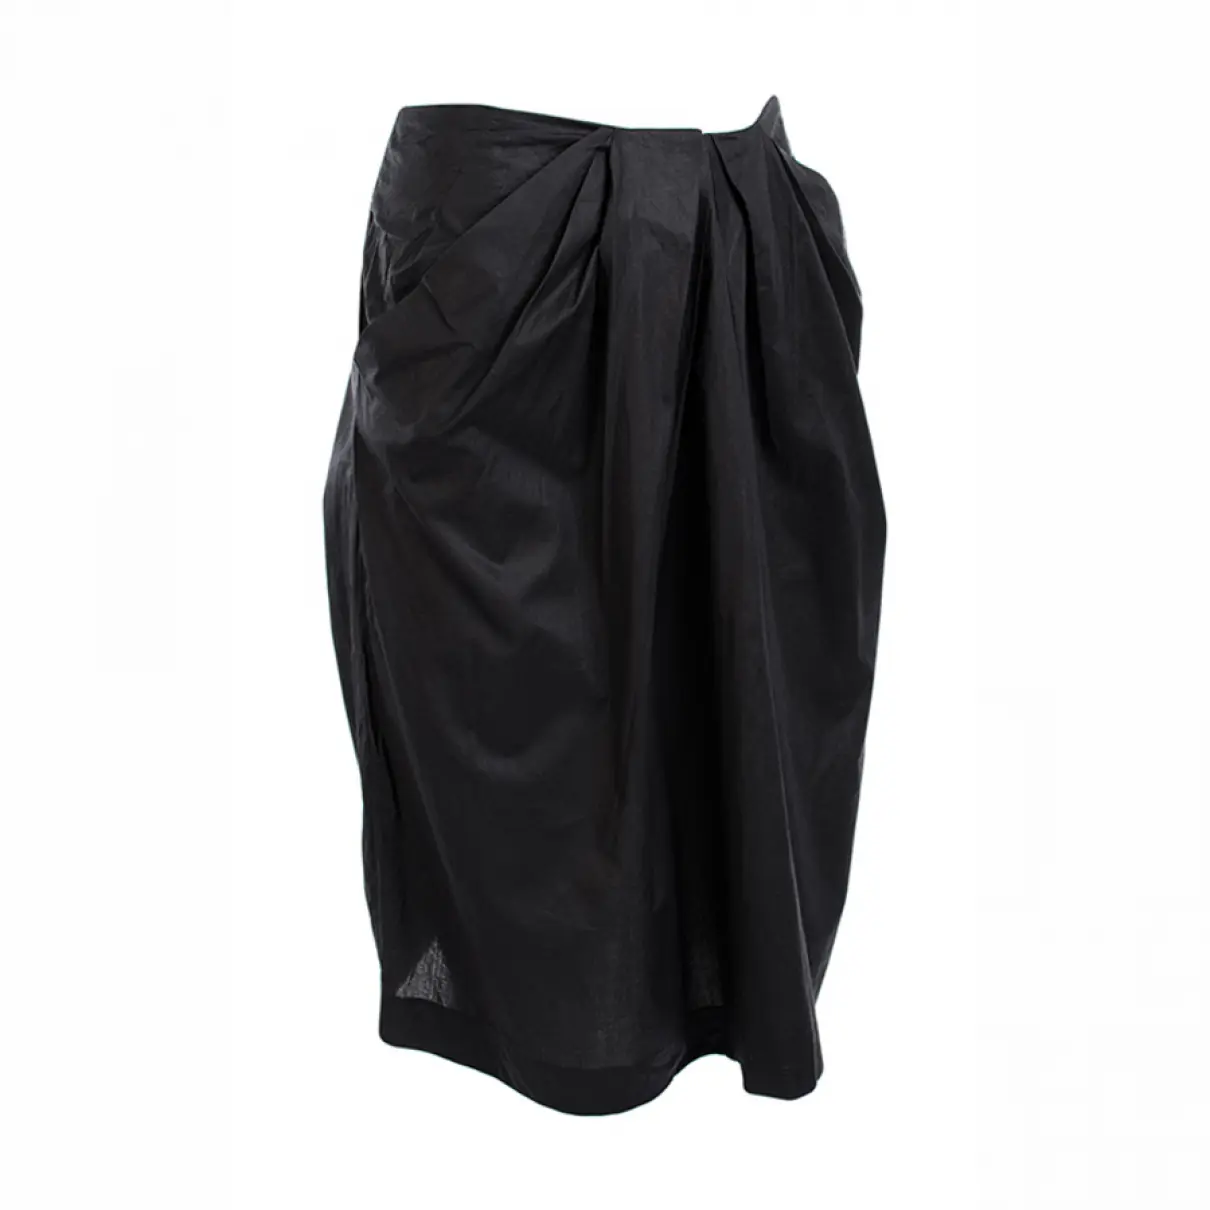 Buy Kate by Laltramoda Mid-length skirt online